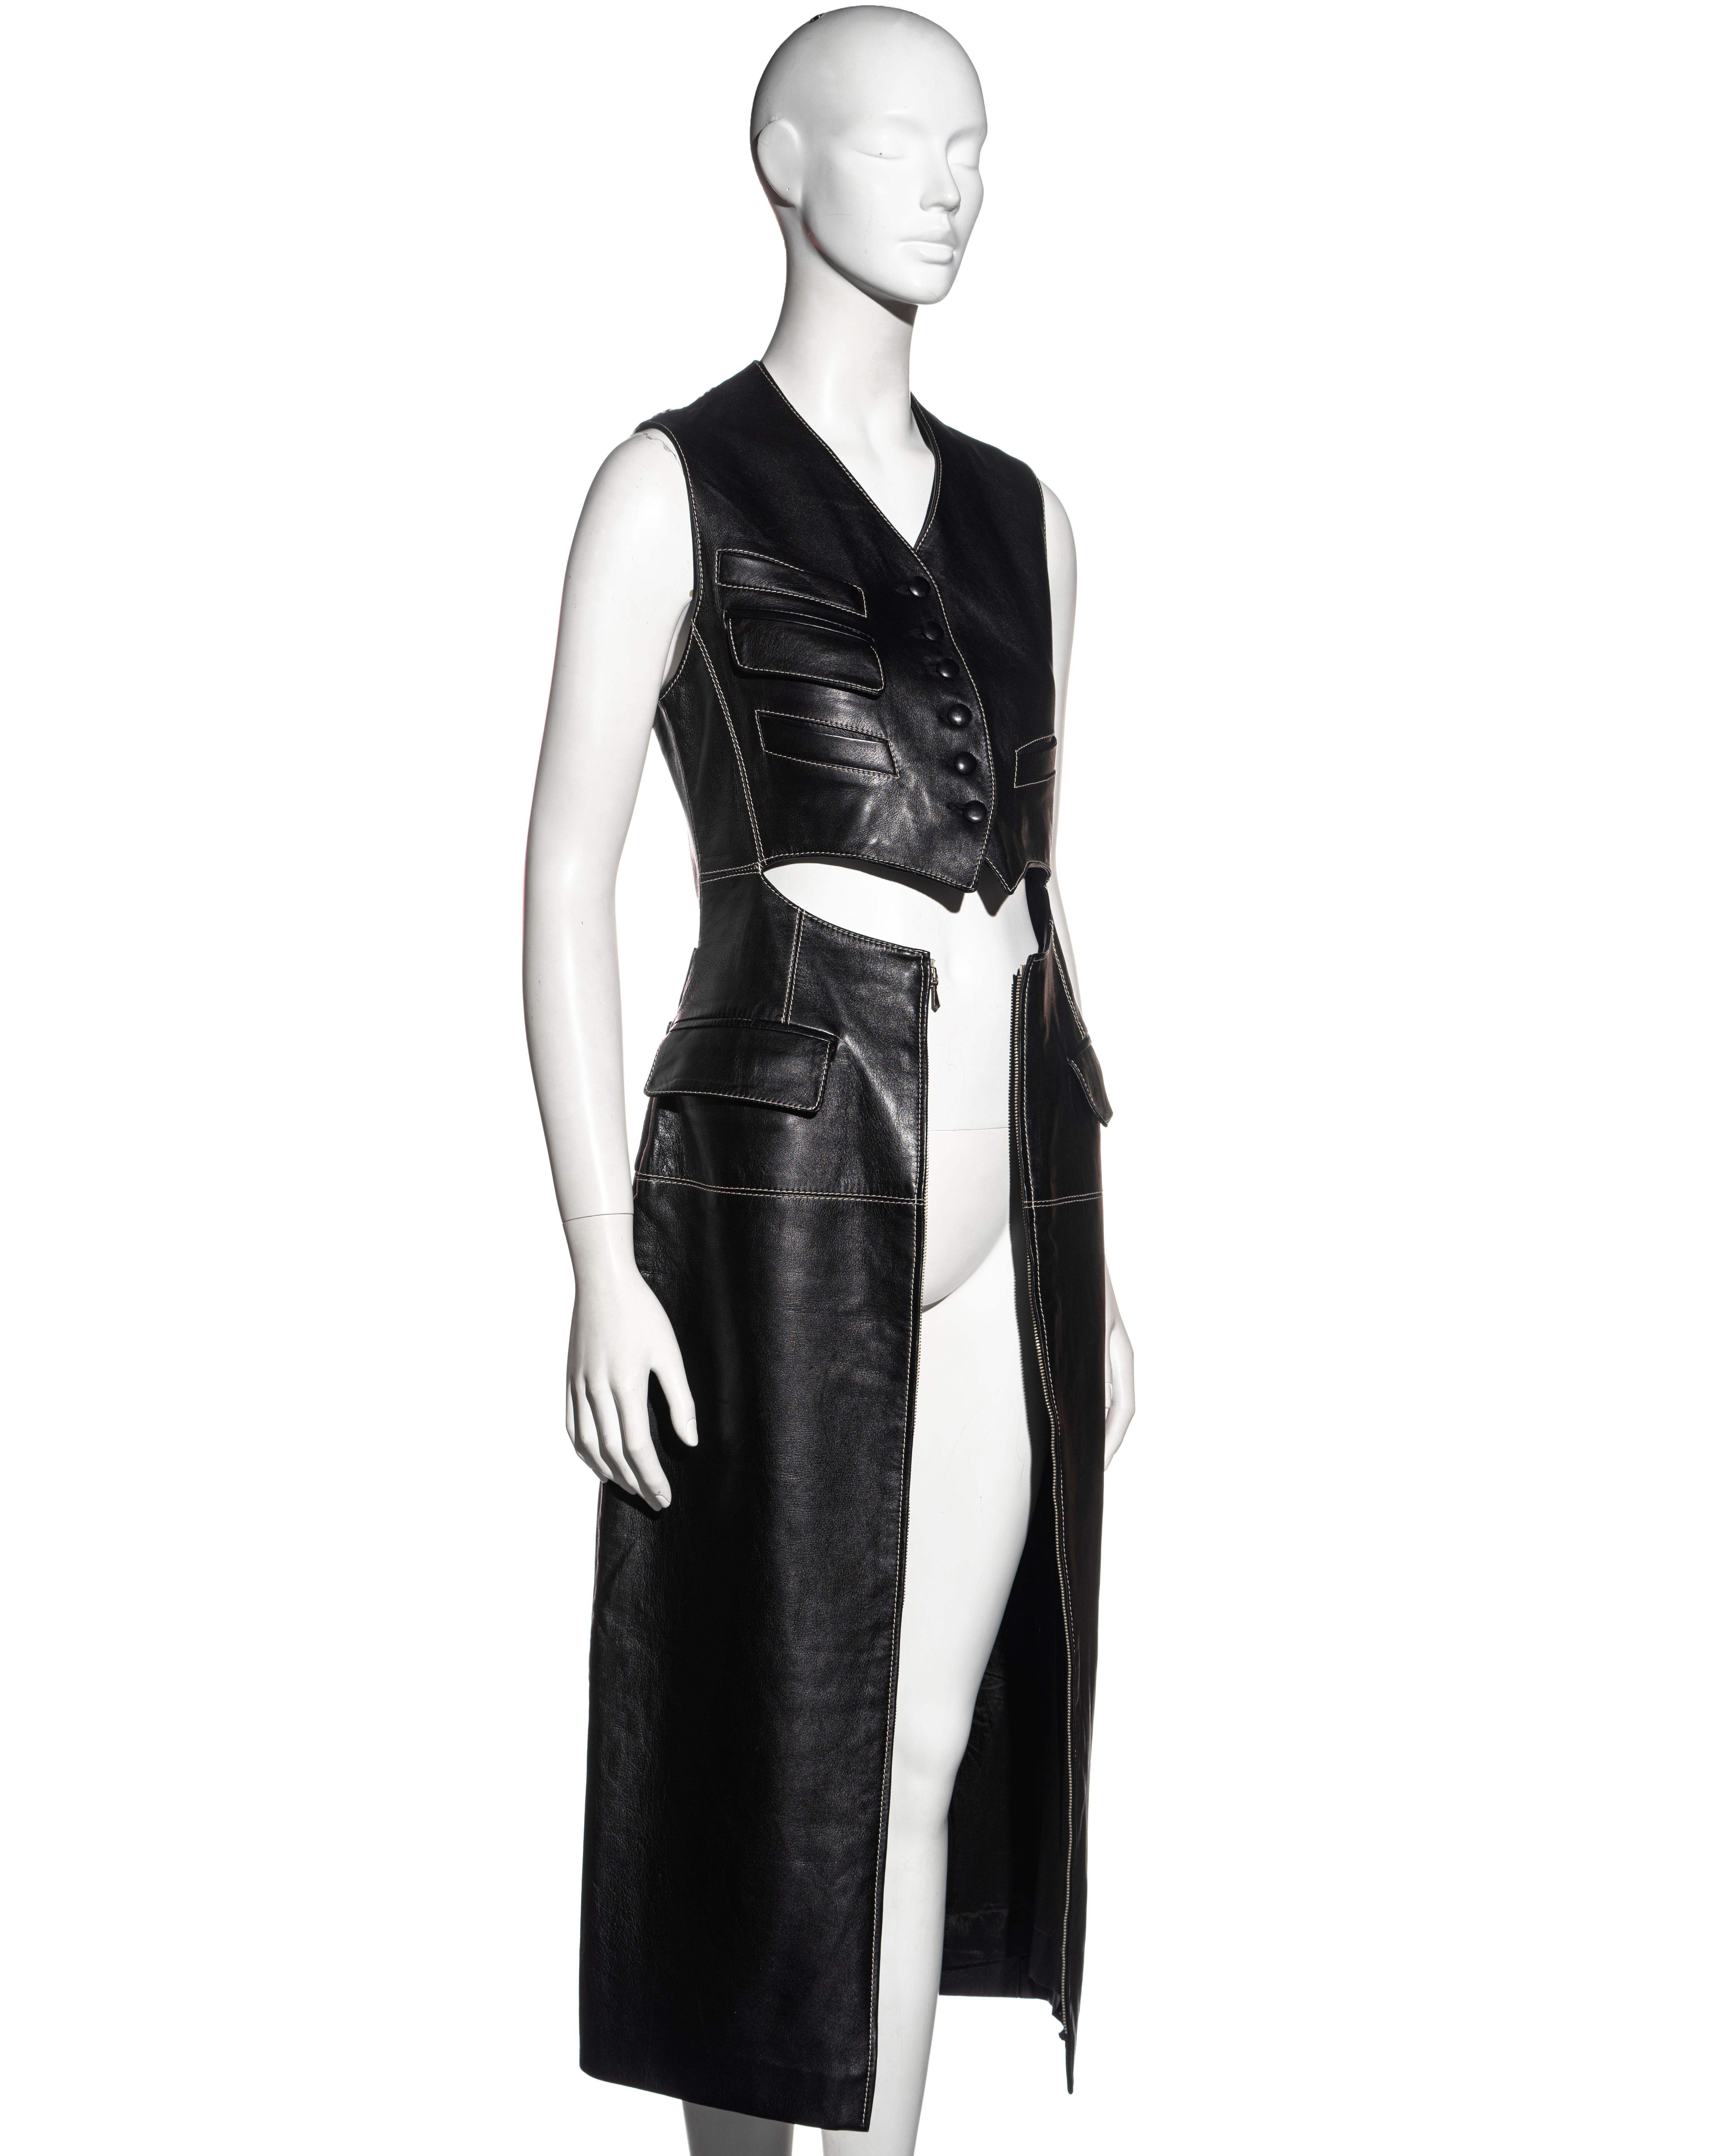 Black Jean Paul Gaultier black leather waistcoat dress, fw 1992